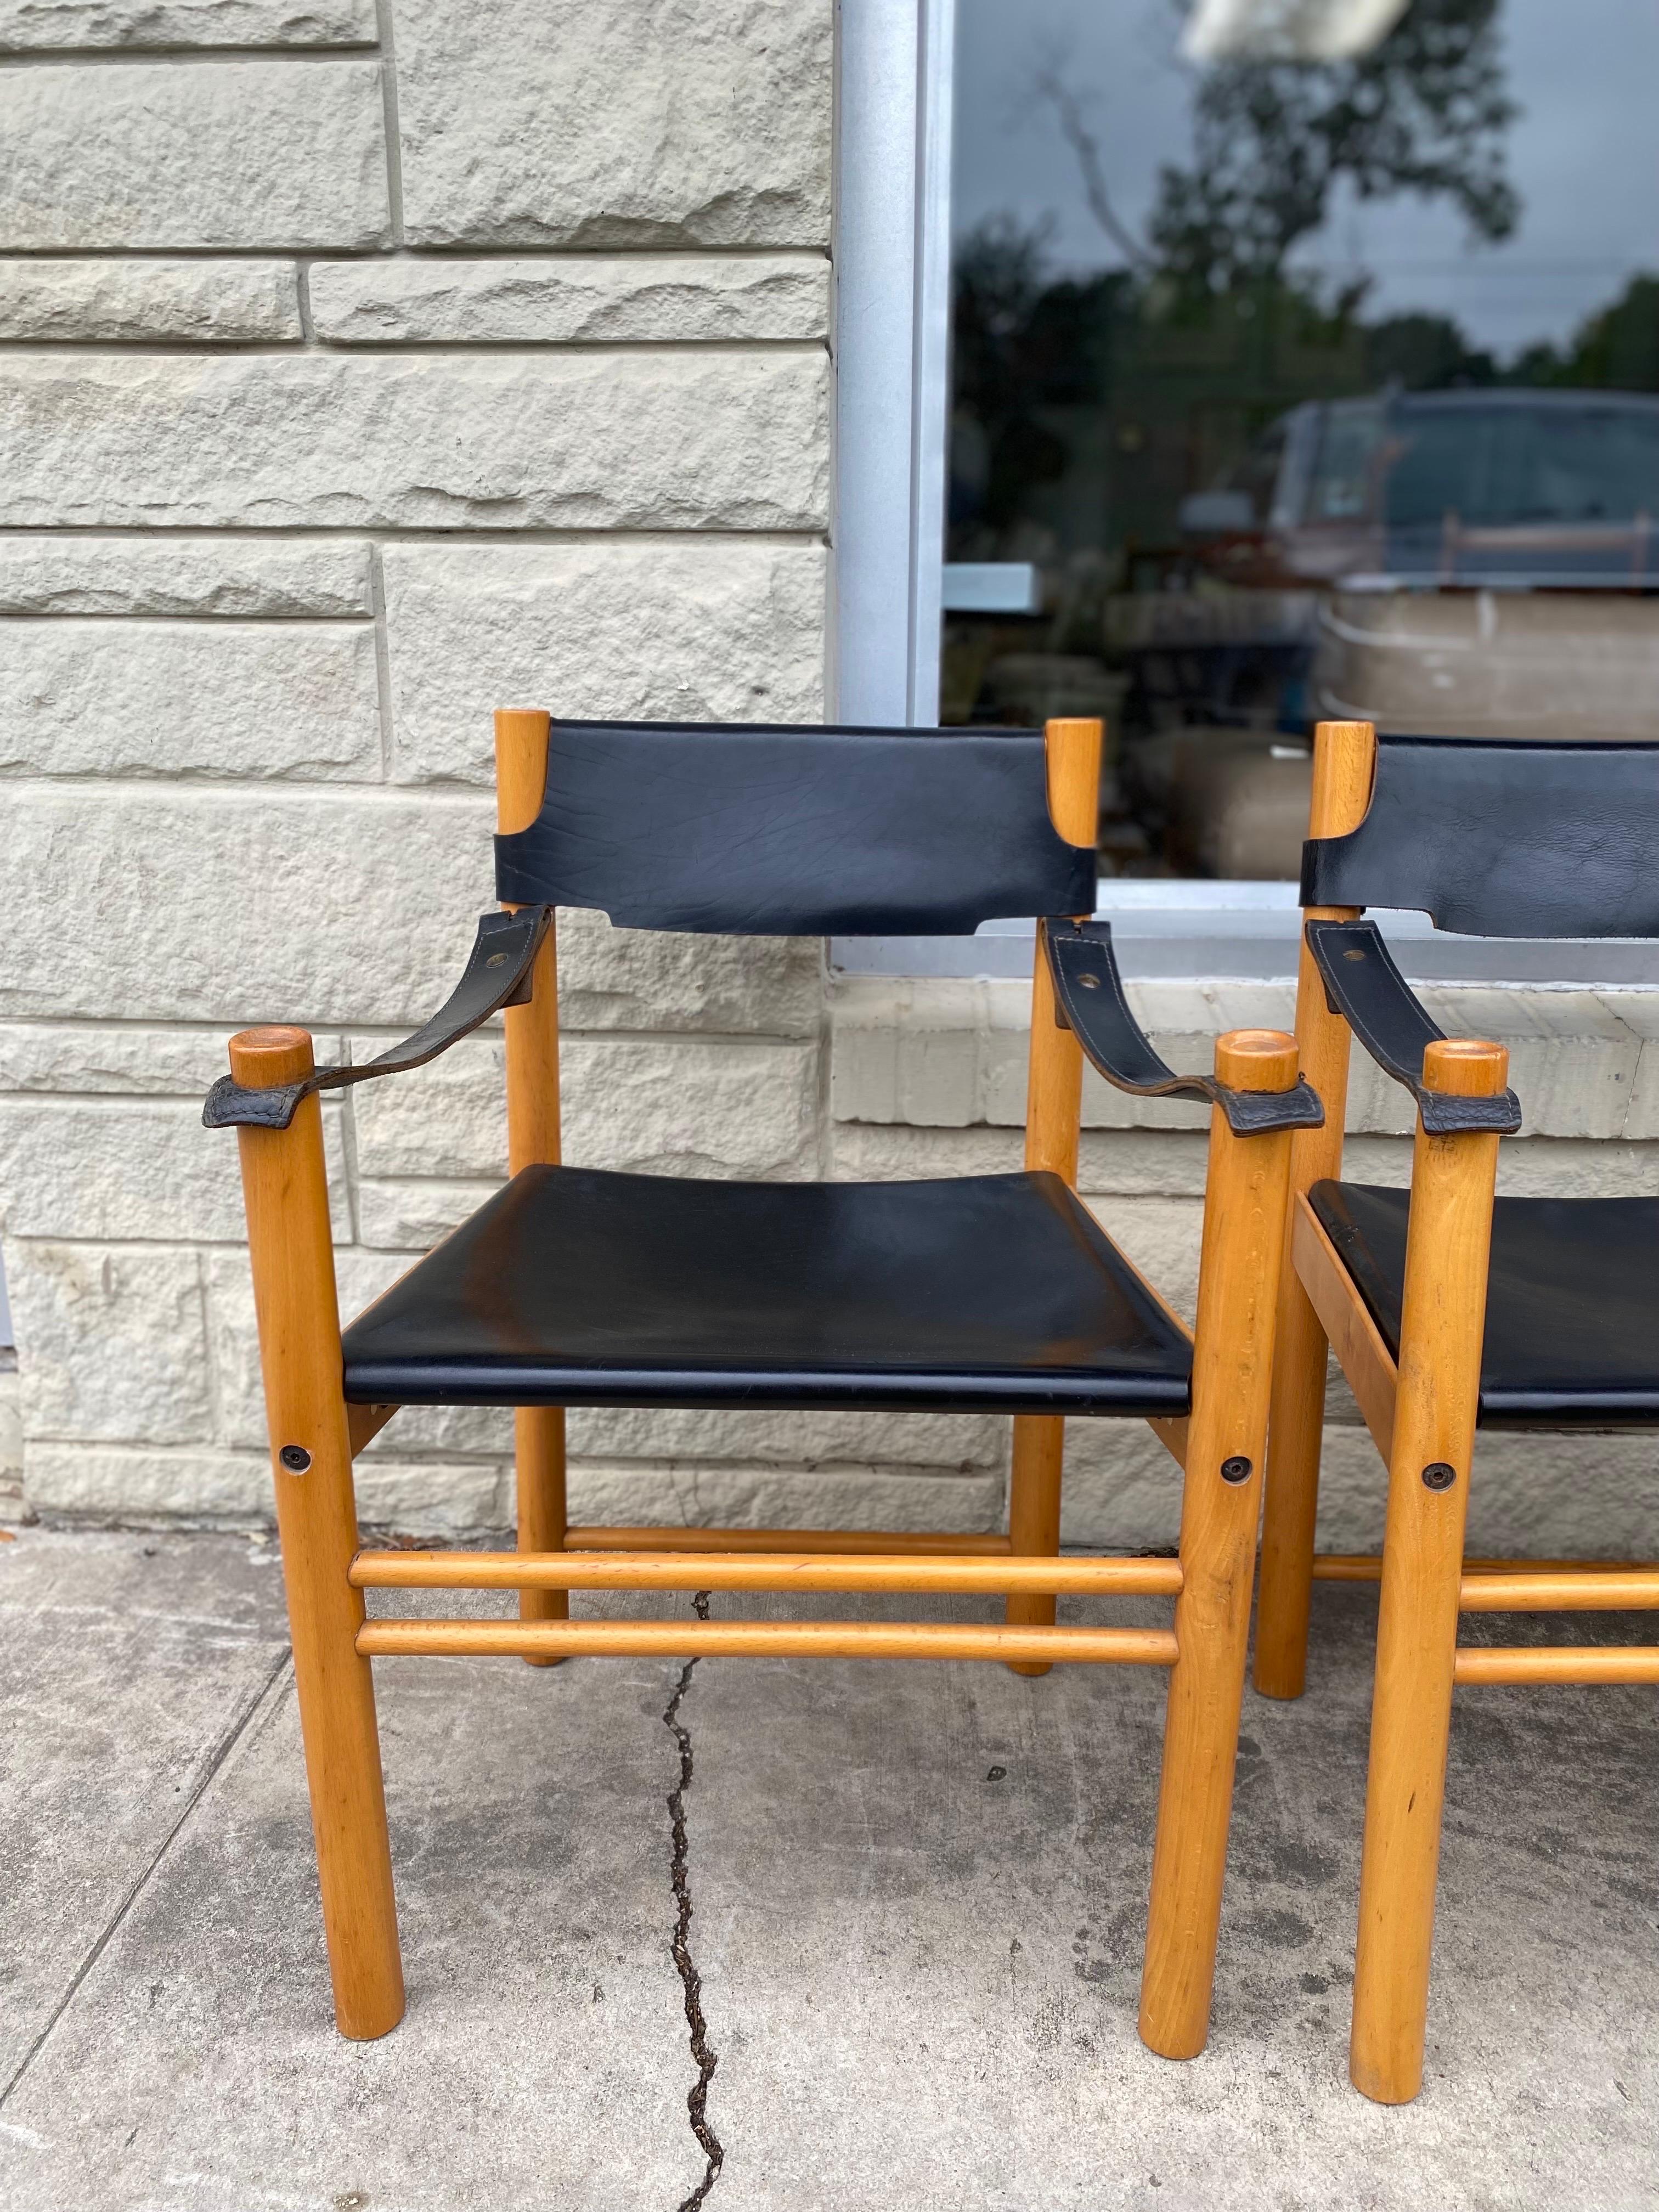 Satz von 4 minimalistischen Ibisco Sedie-Sesseln mit Buchenholzrahmen, Sitzflächen, Arm- und Rückenlehnen aus Leder, Italien, ca. Ende der 1960er Jahre. Diese Vintage-Stühle im italienischen Safari-Stil sind in gutem Gesamtzustand mit leichten